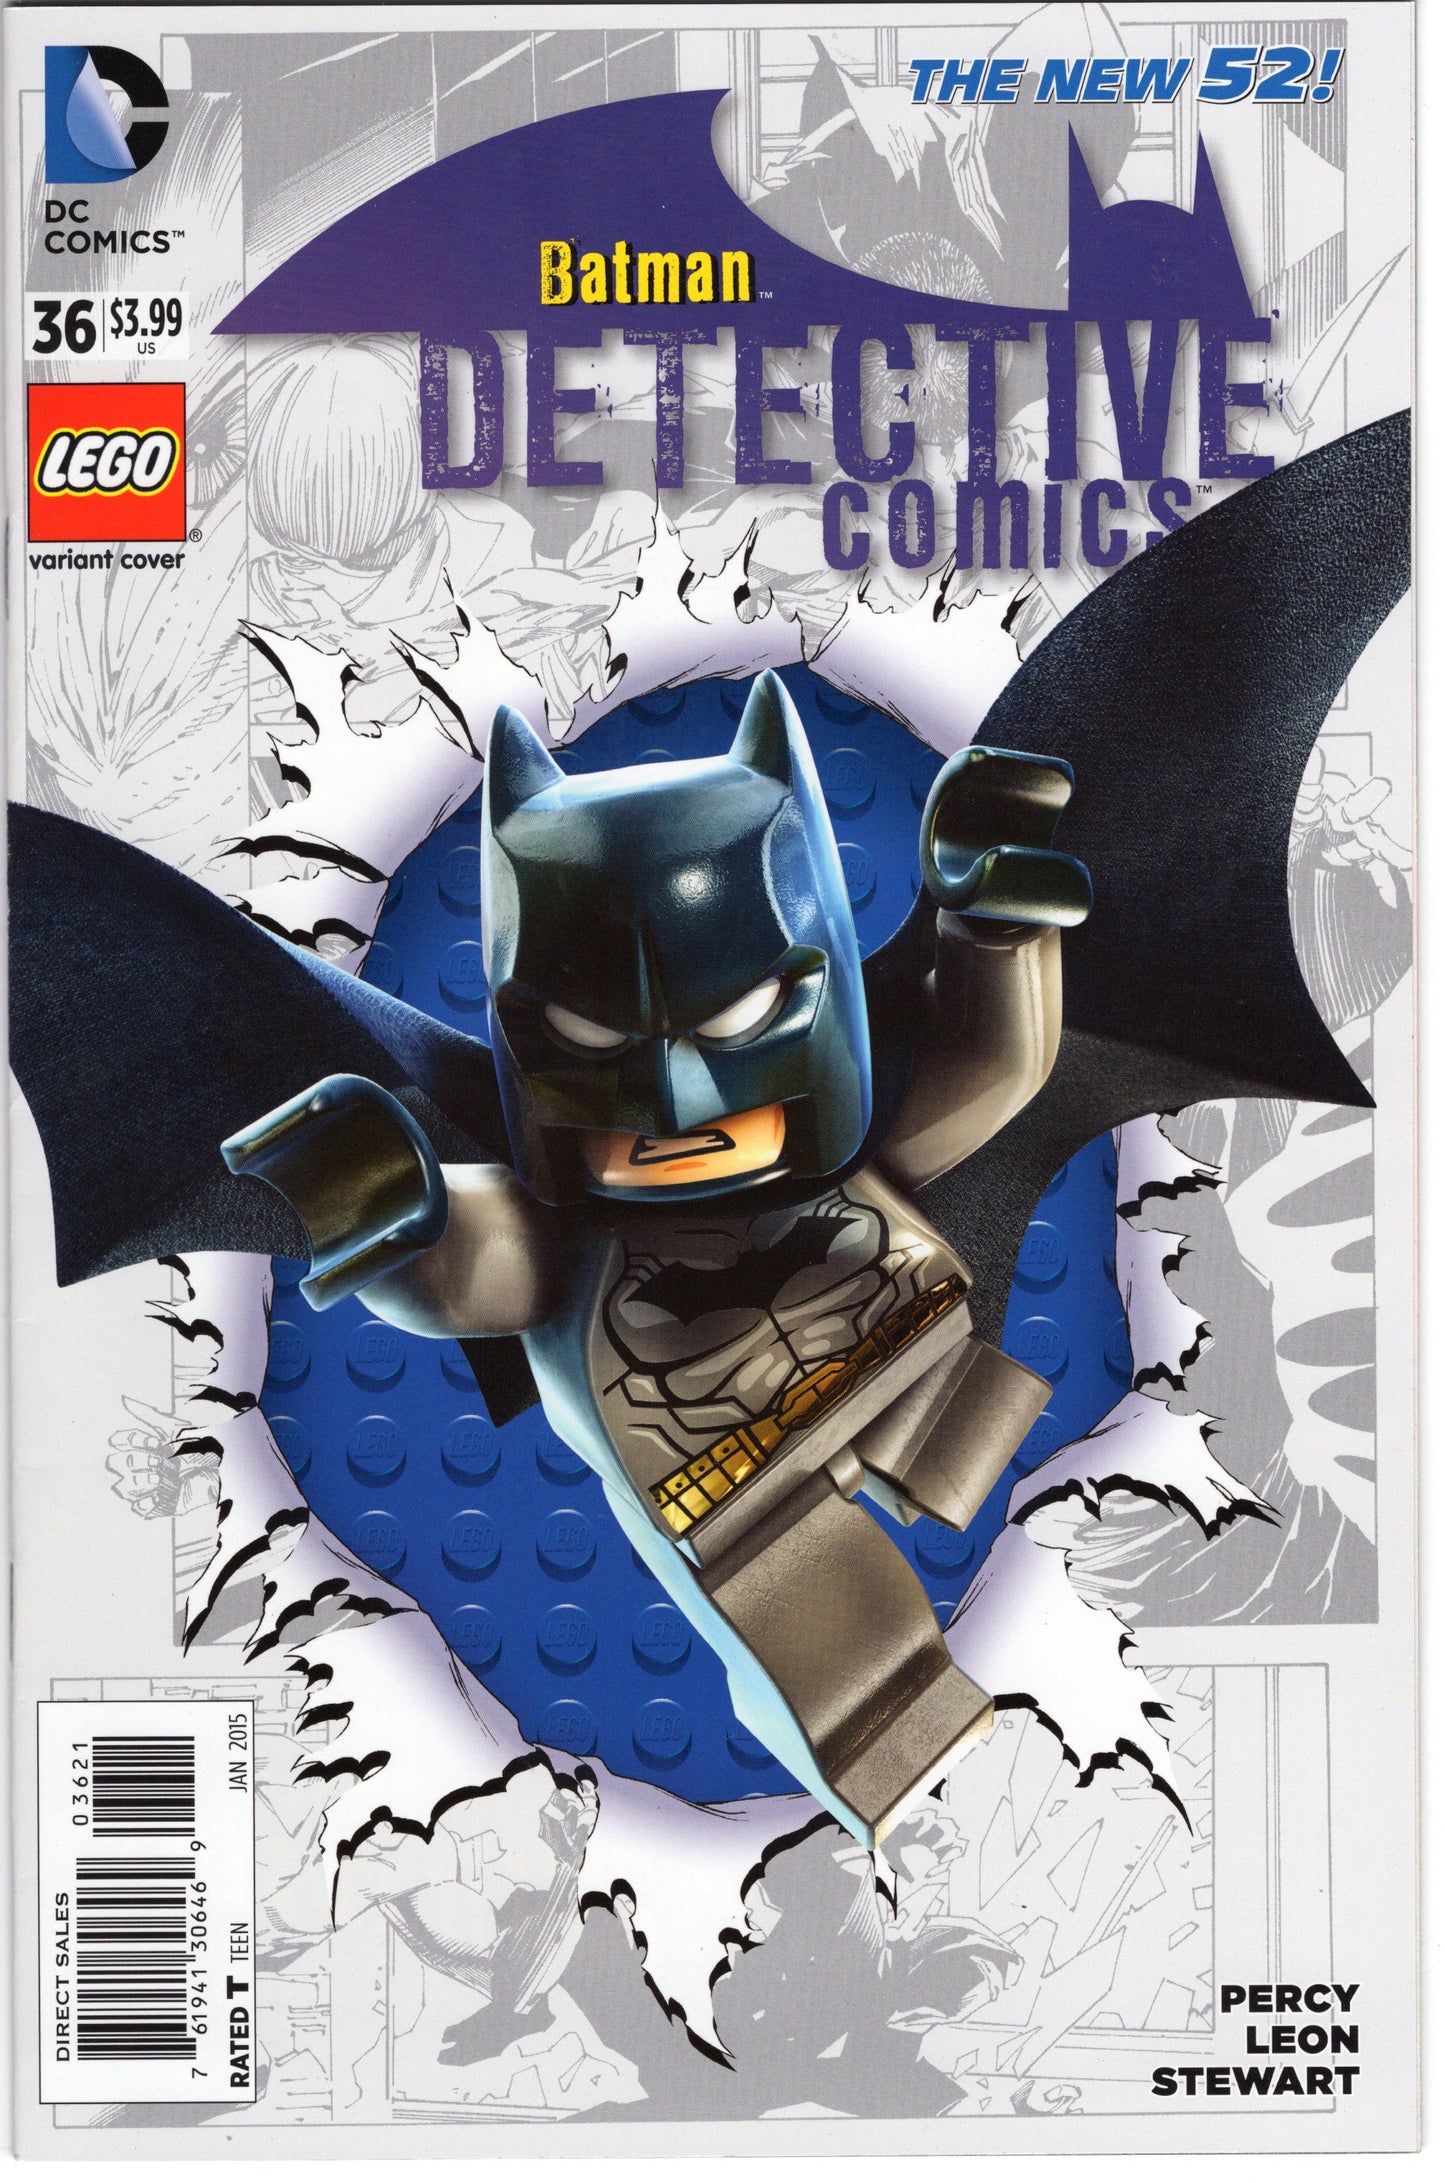 Batman Detective Comics - Issue #6  "Lego Variant Cover" (Jan. 2015 - DC Comics) VF/NM